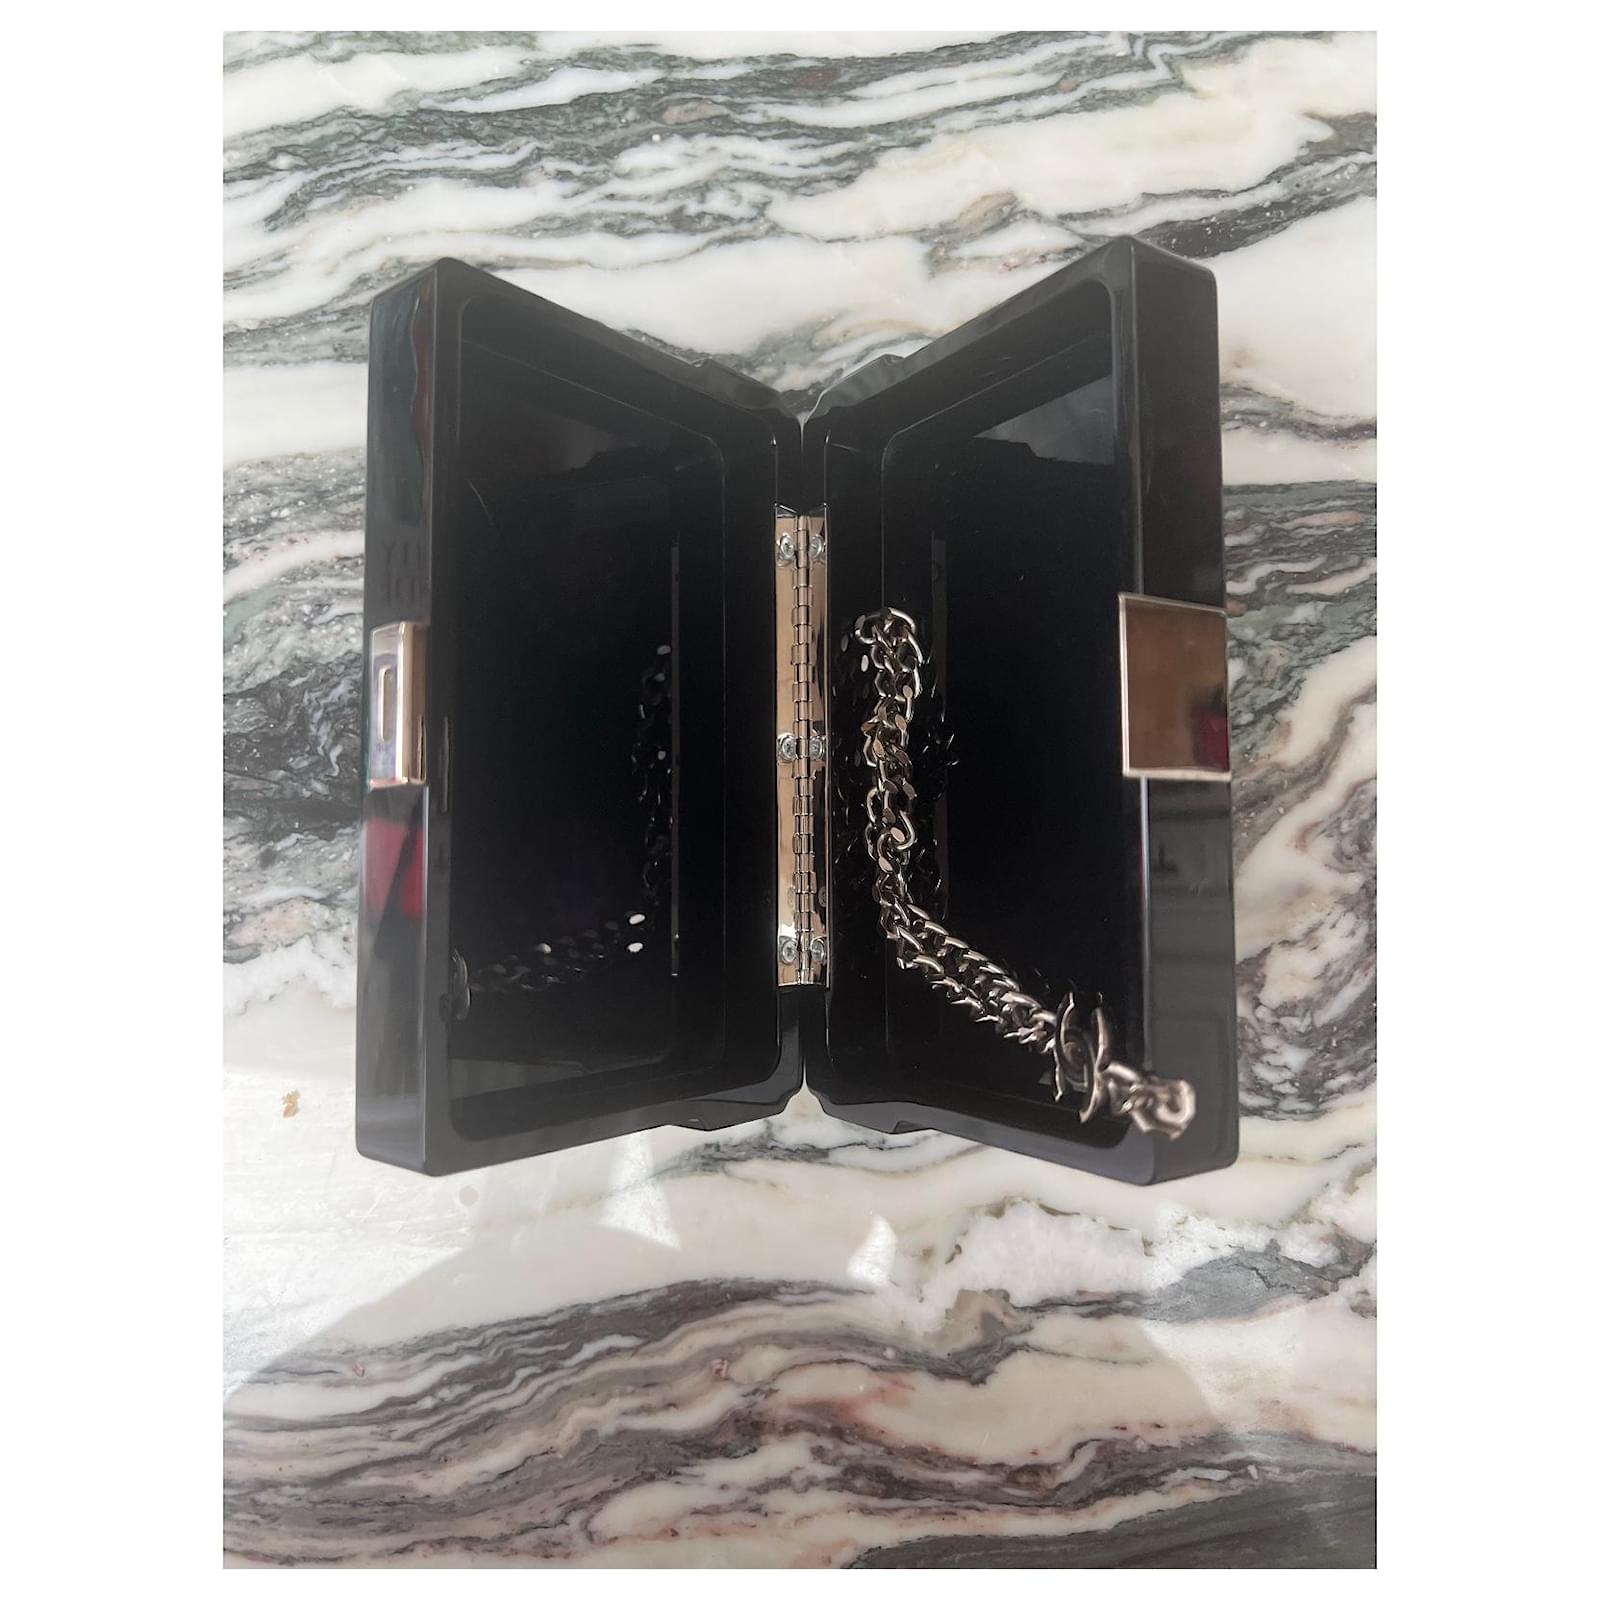 Trendy CC Chanel Black Lucite Cassette Tape Clutch Bag Acrylic ref